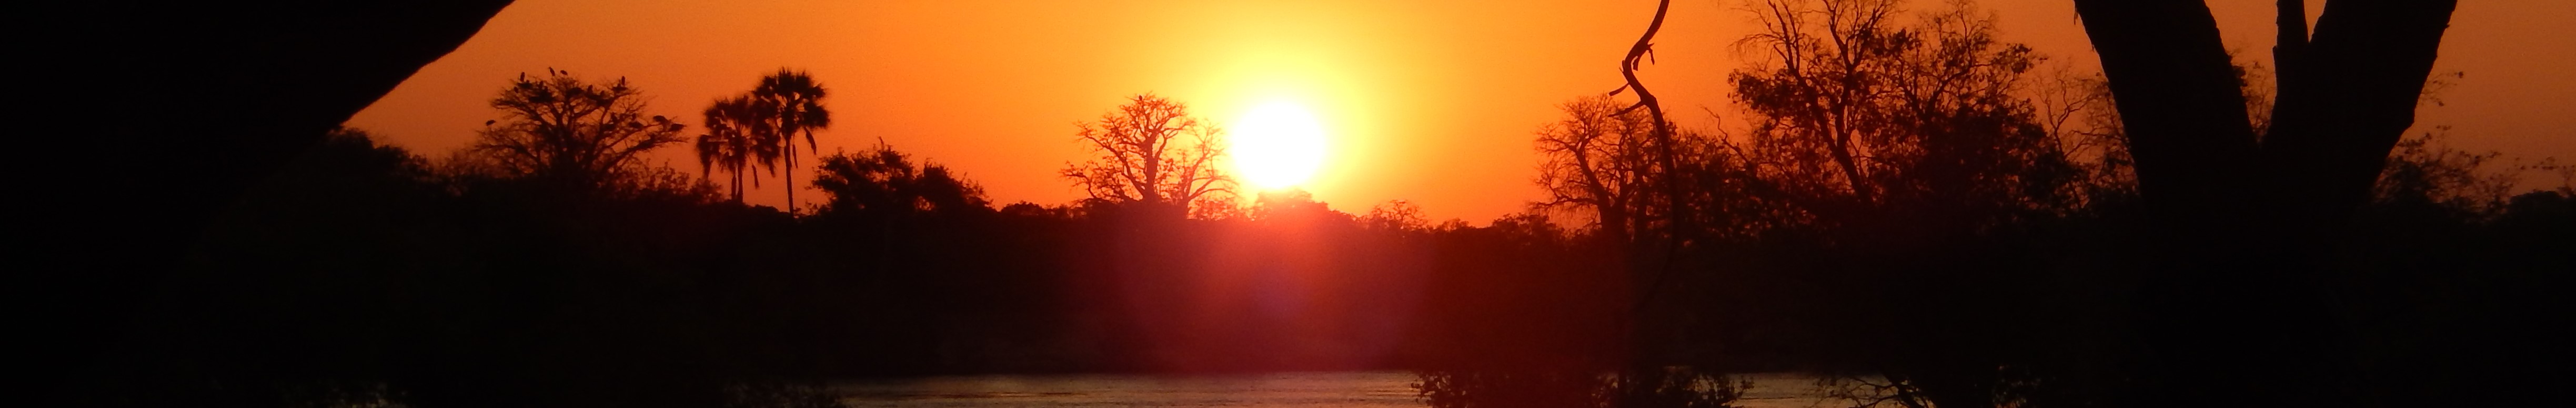 Sunset across the Zambezi River